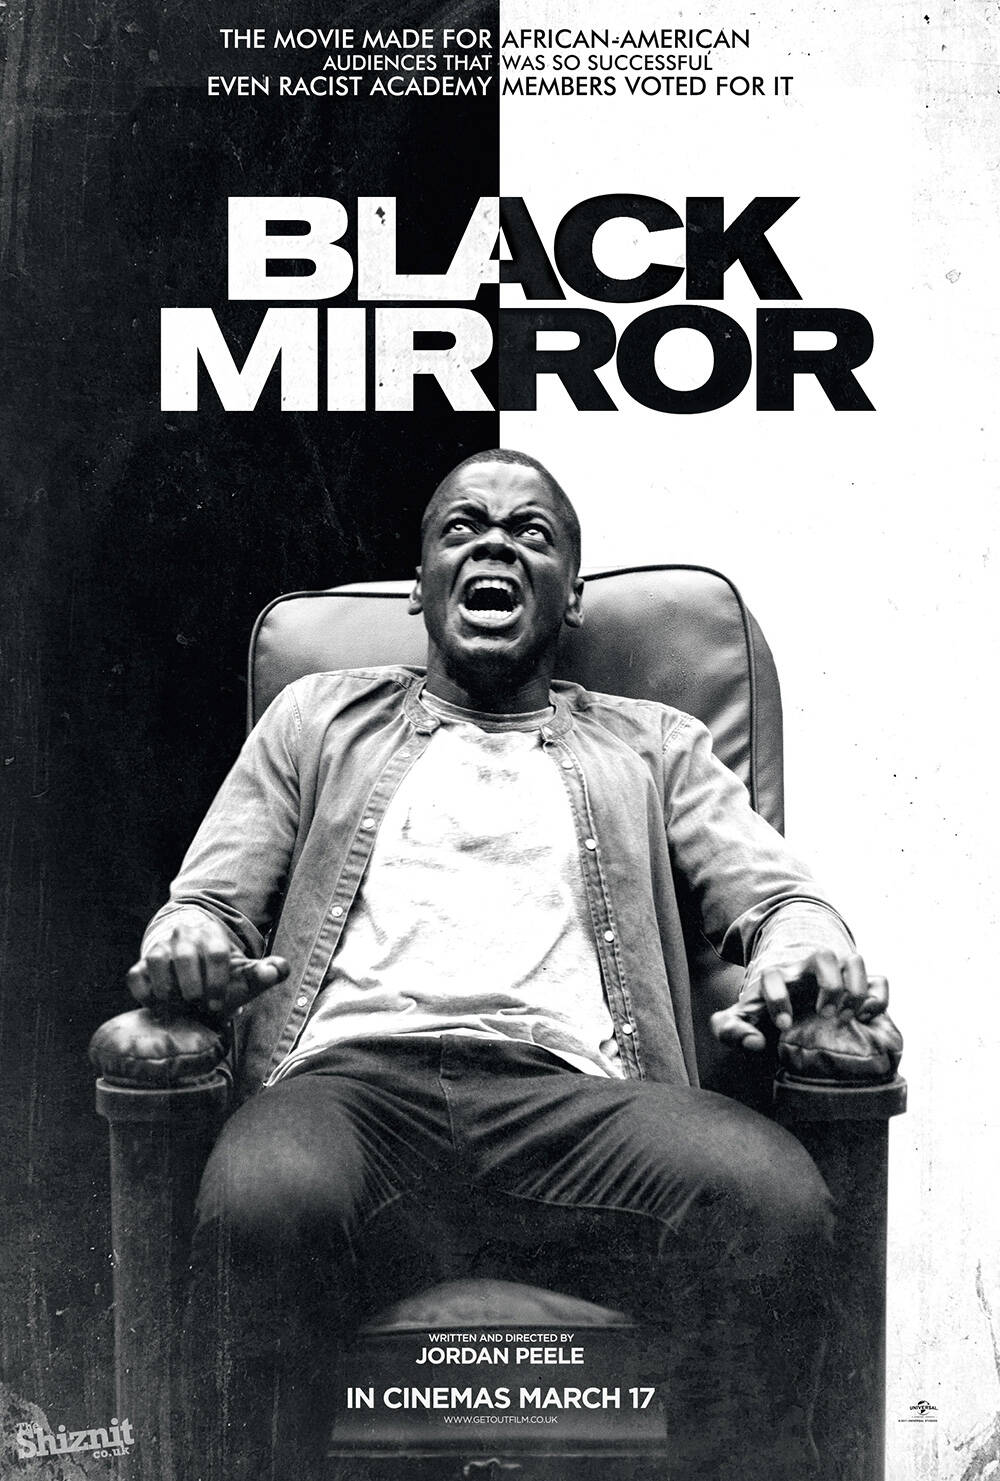 "Black Mirror" - "Um filme feito para audiências afrodescendentes que fez tanto sucesso que até os racistas da academia votaram" . Foto: Divulgação